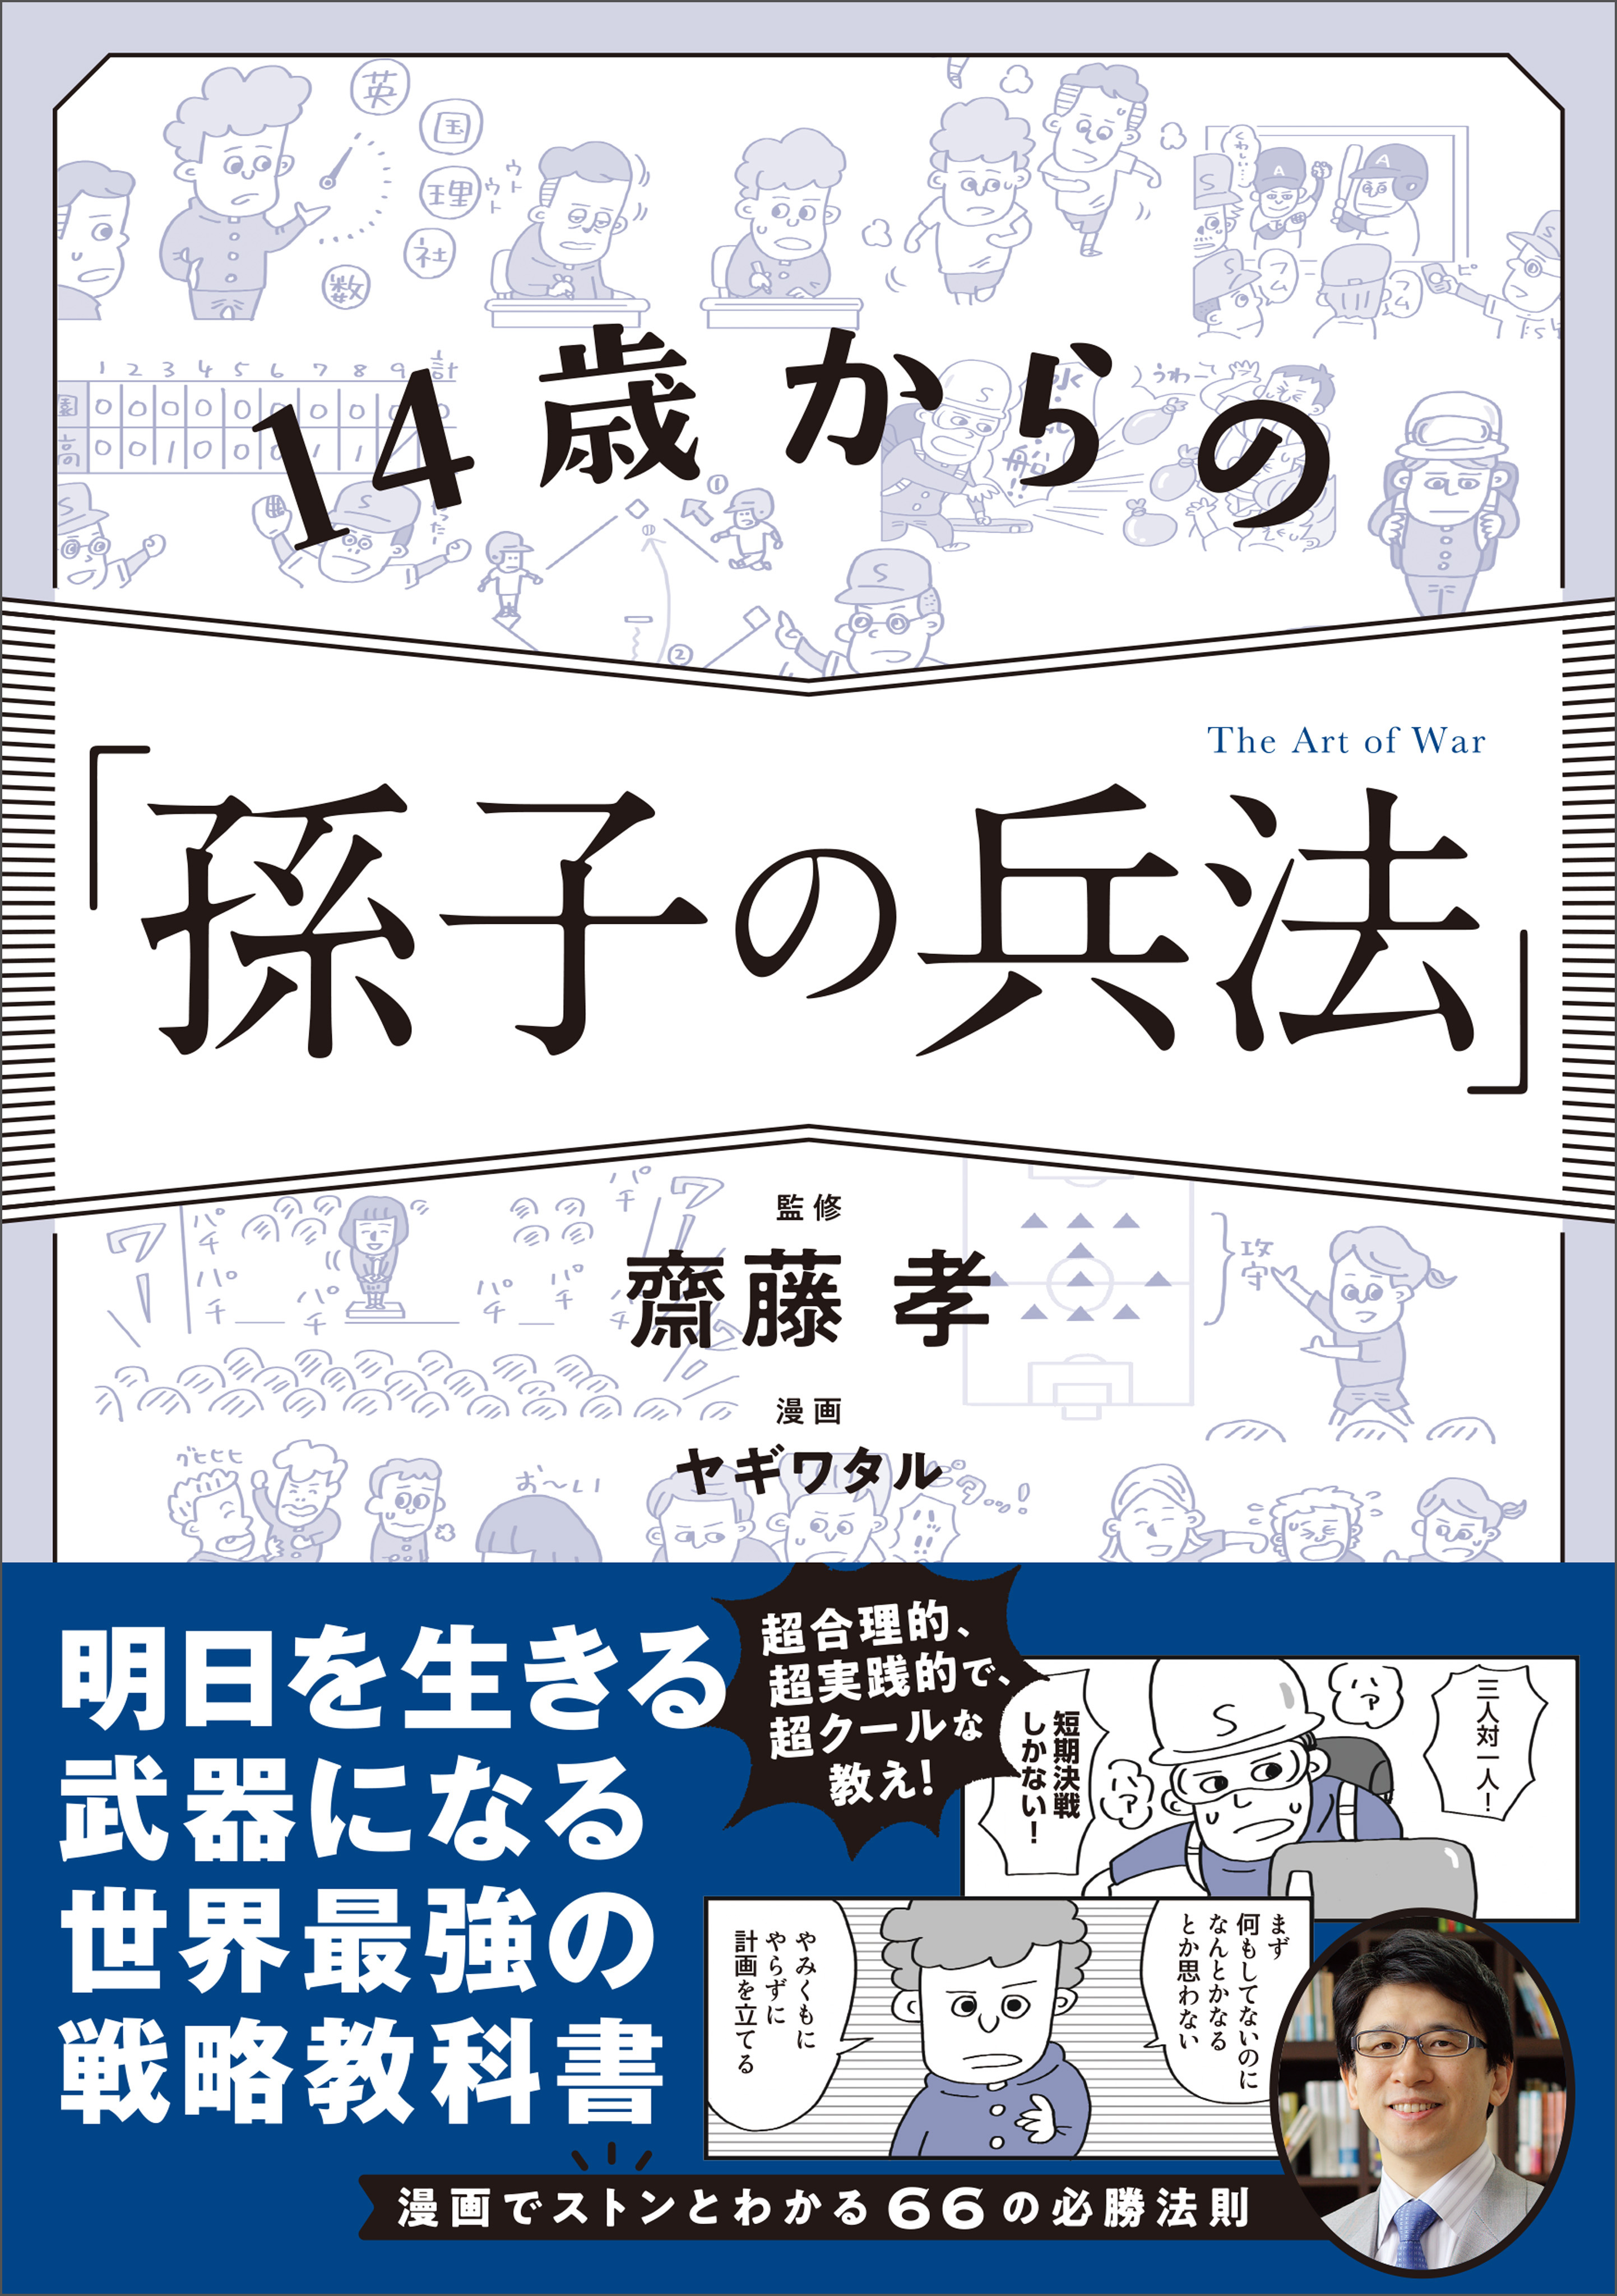 14歳からの「孫子の兵法」 - 齋藤孝/ヤギワタル - 漫画・無料